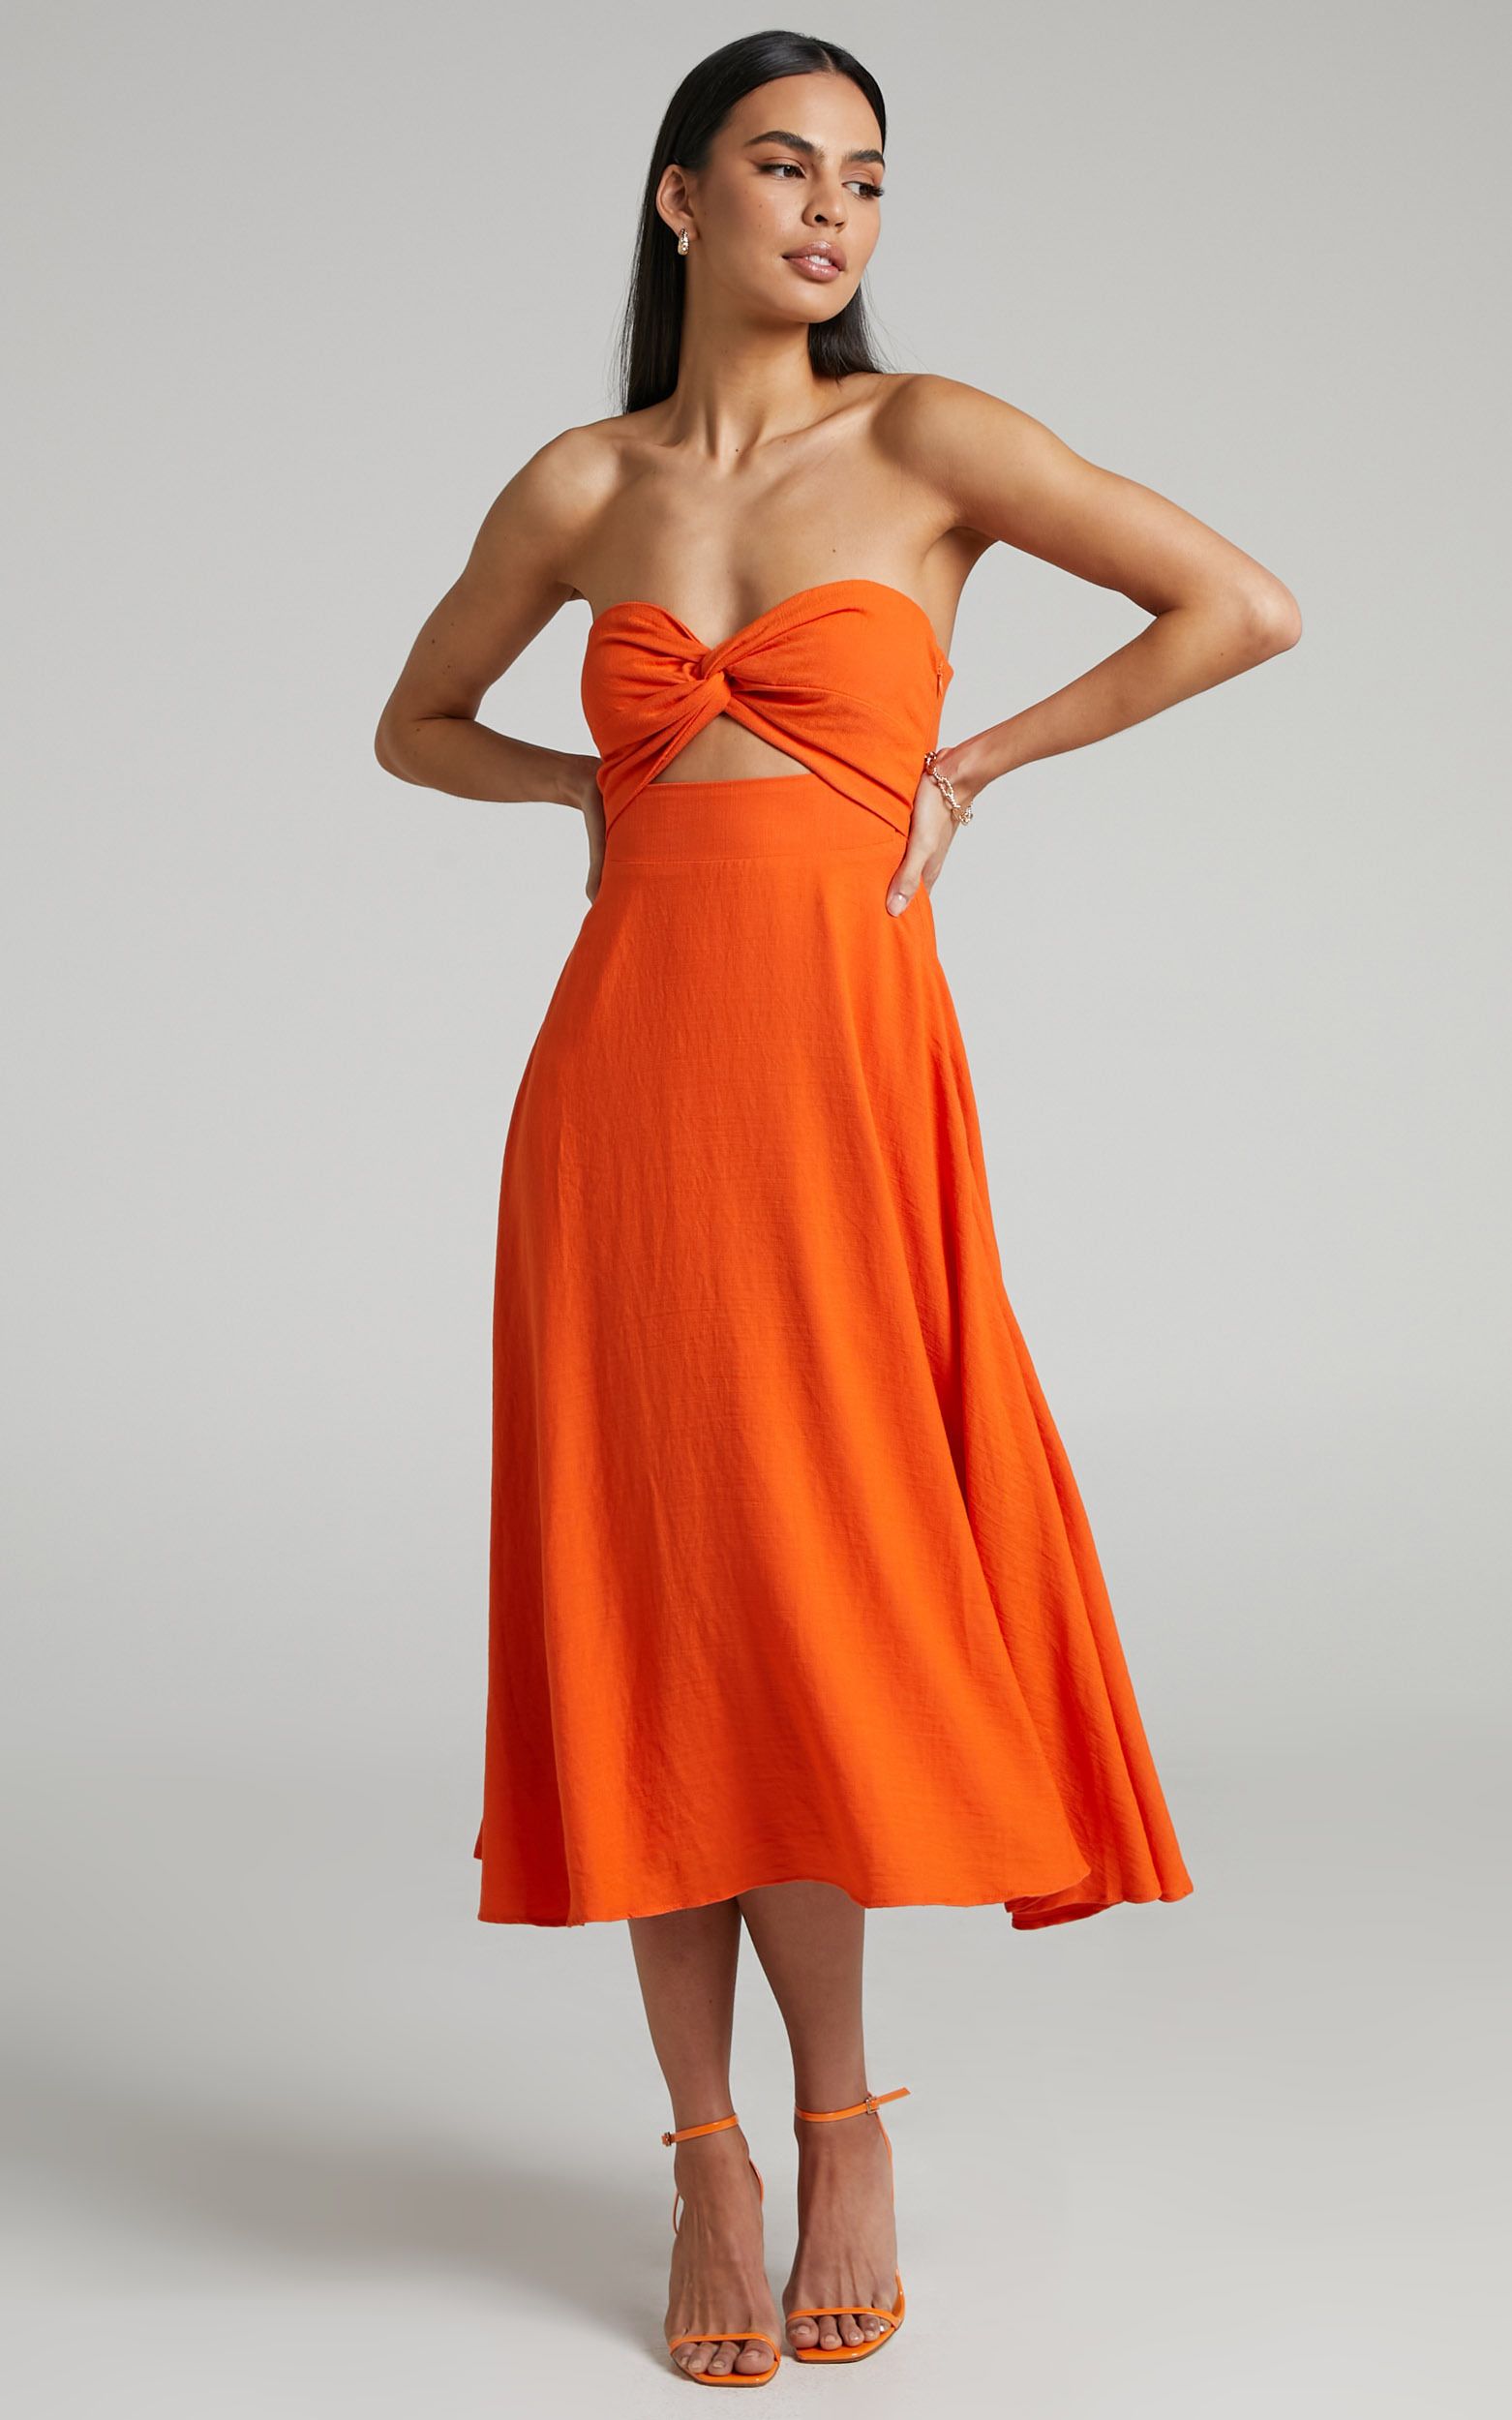 Avie Twist Strapless Cocktail Dress in Orange | Showpo (US, UK & Europe)